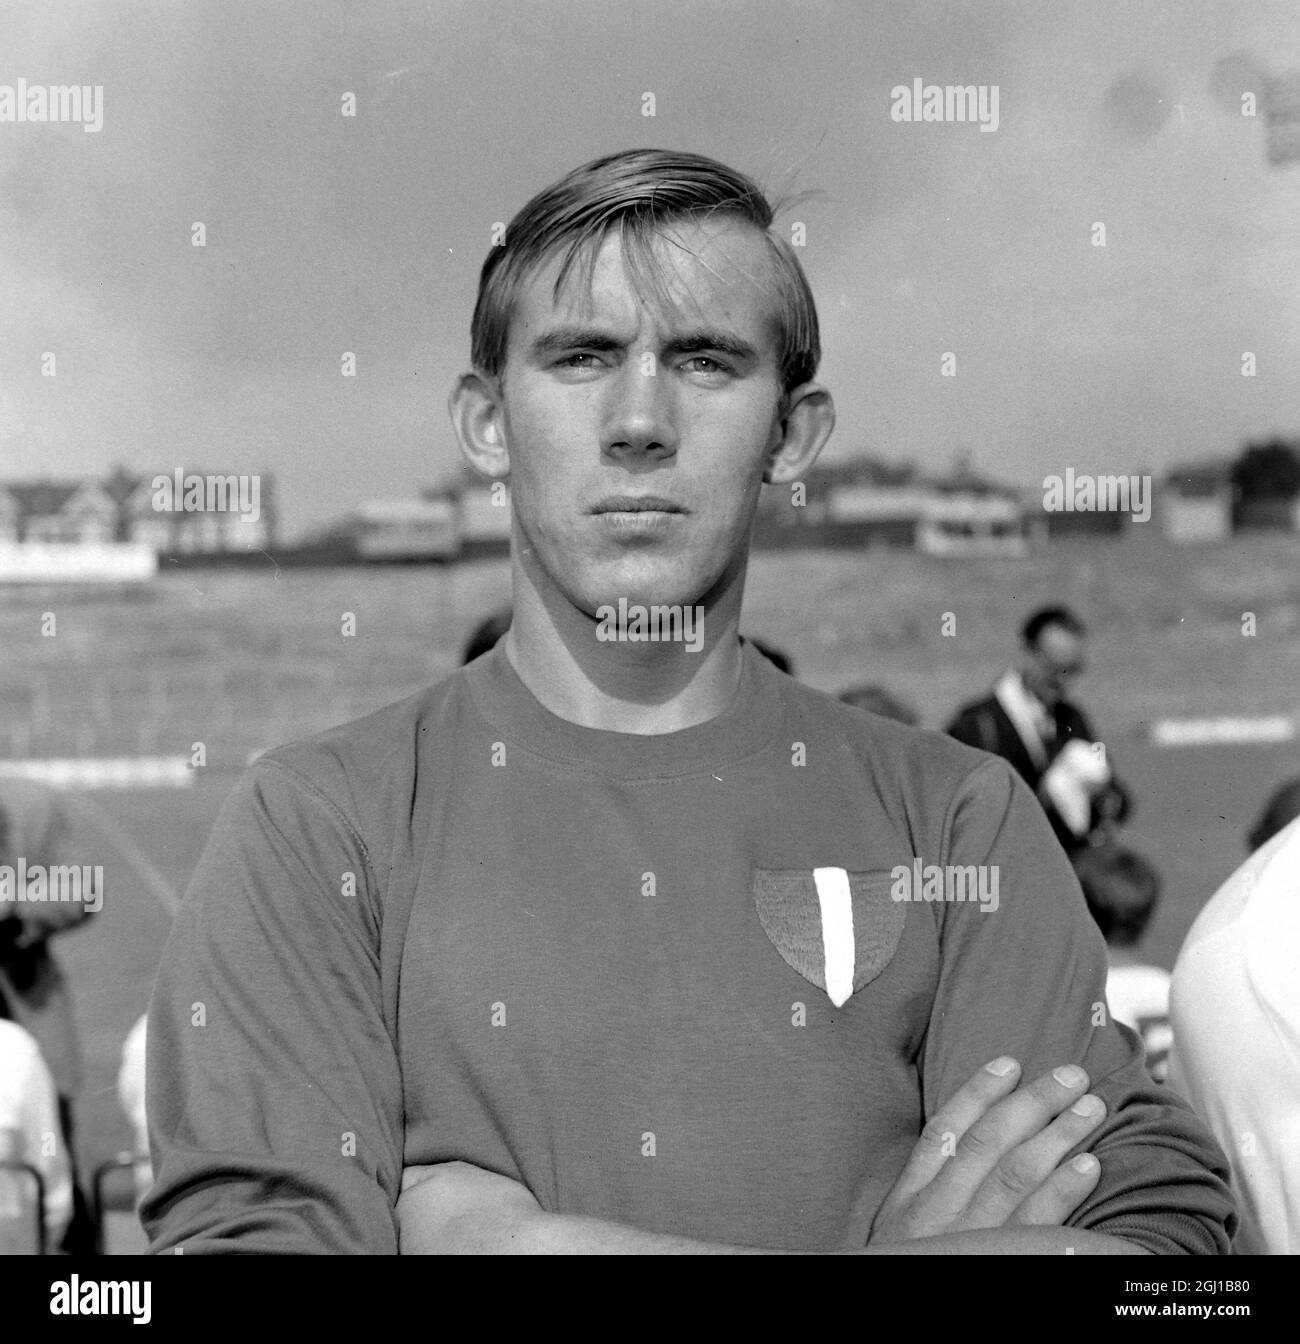 BILL VITRIER - PORTRAIT DU FOOTBALLEUR DE L'ÉQUIPE CRYSTAL PALACE FC FOOTBALL CLUB À LONDRES - ; 13 AOÛT 1964 Banque D'Images